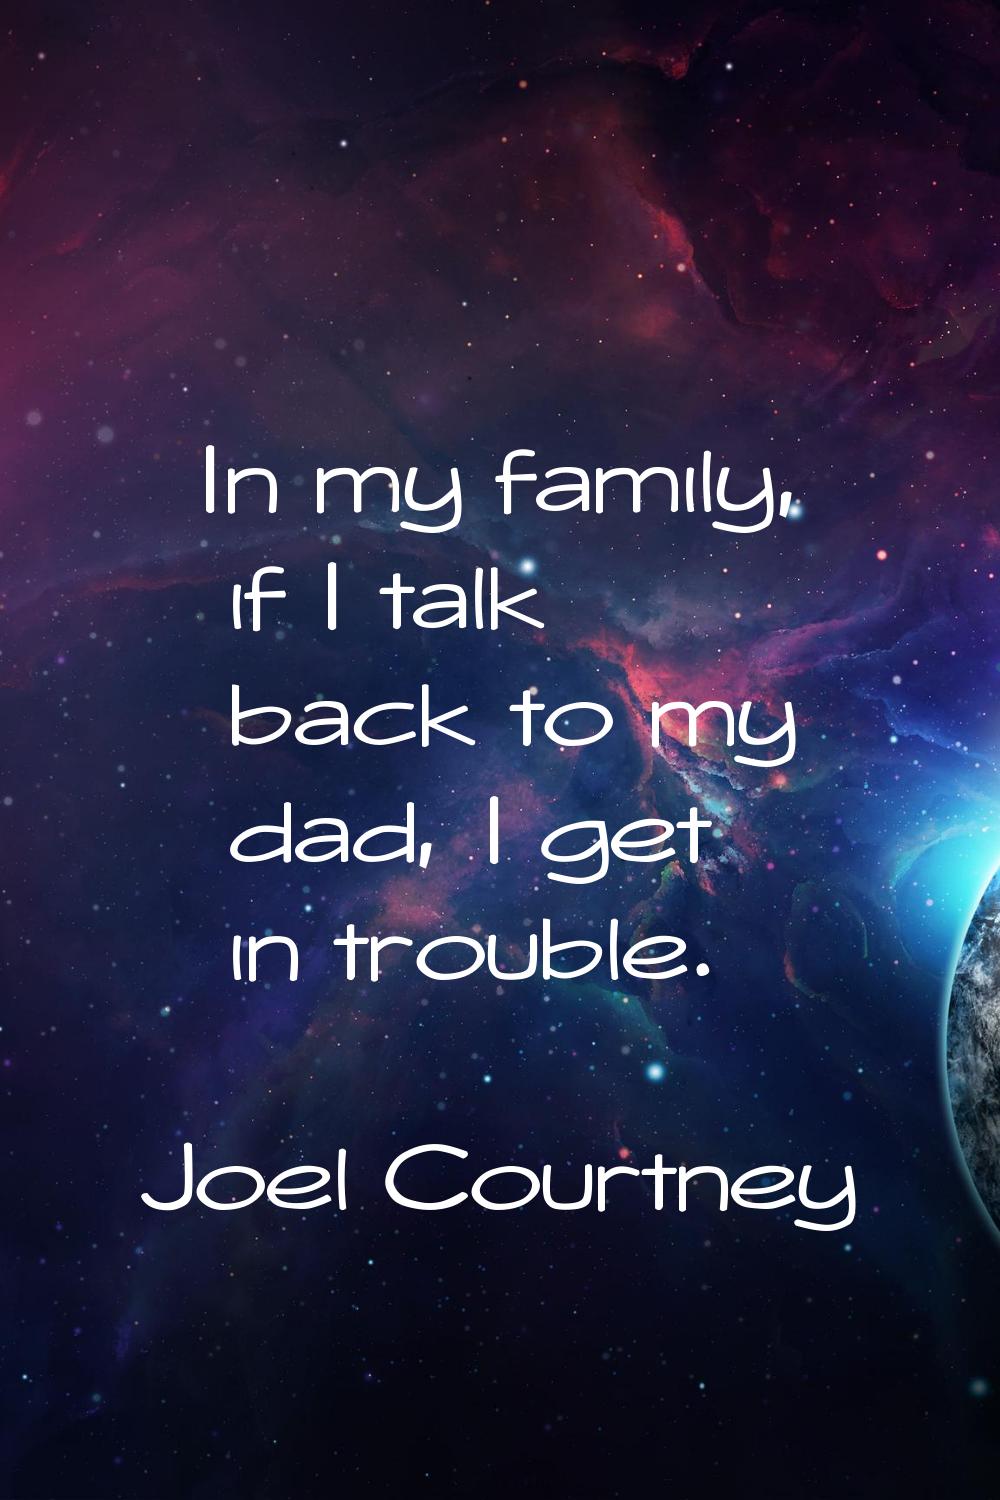 In my family, if I talk back to my dad, I get in trouble.